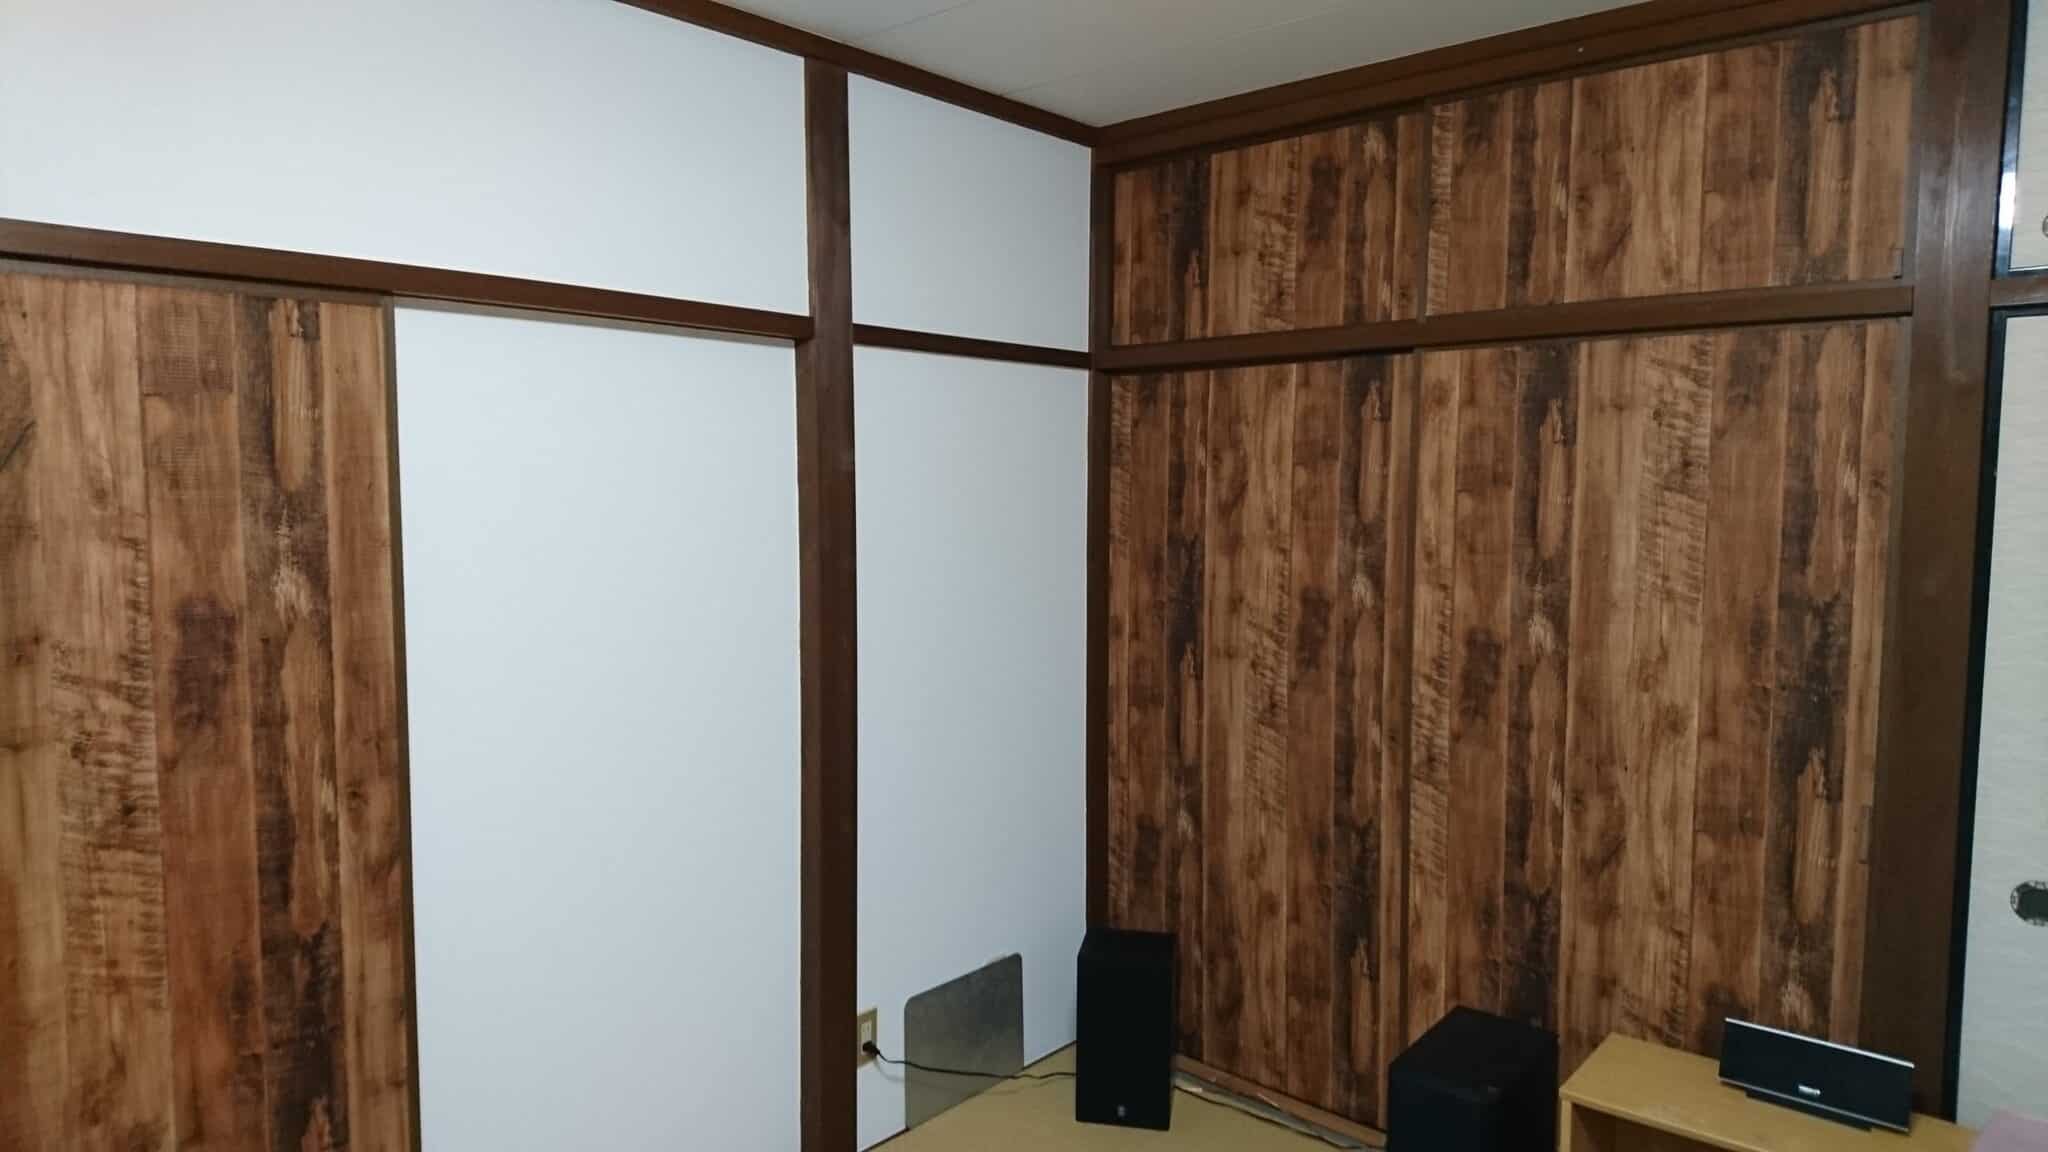 Diyで寝室のリフォーム 押し入れのふすまをクロスで木板風に変身 塗装職人のdiyブログ